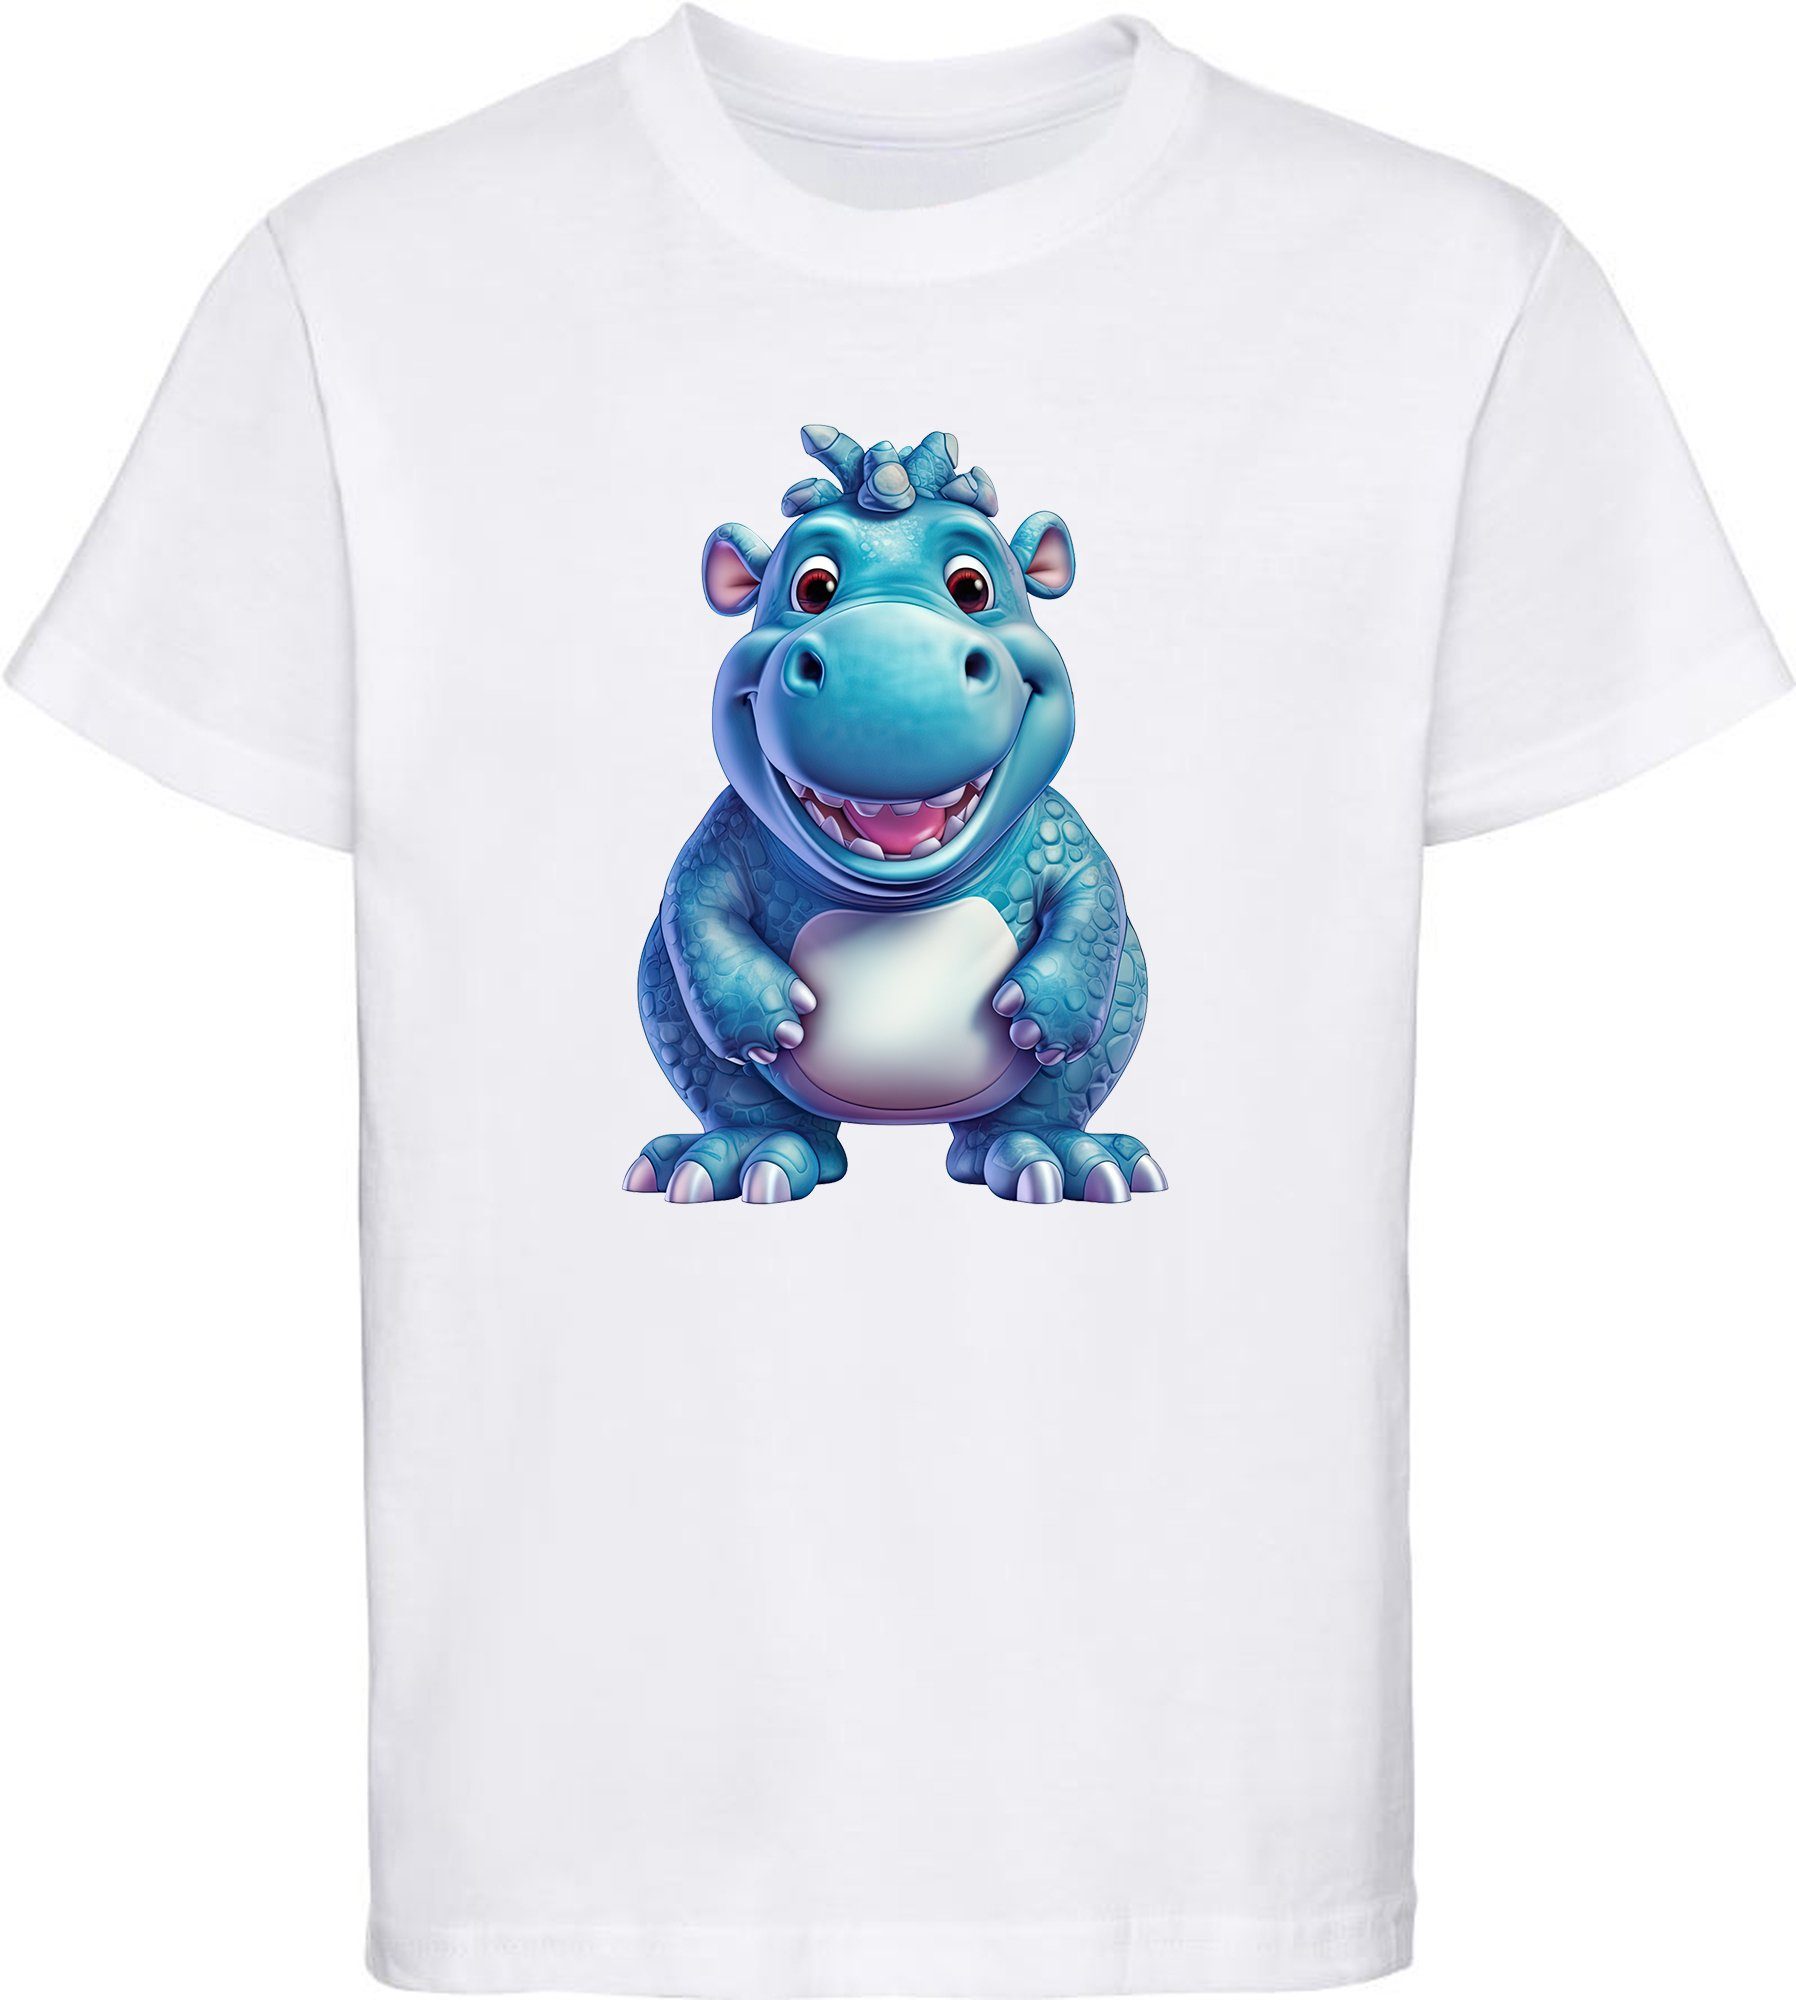 MyDesign24 T-Shirt Kinder Wildtier Print Shirt bedruckt - Baby Hippo Nilpferd Baumwollshirt mit Aufdruck, i274 weiss